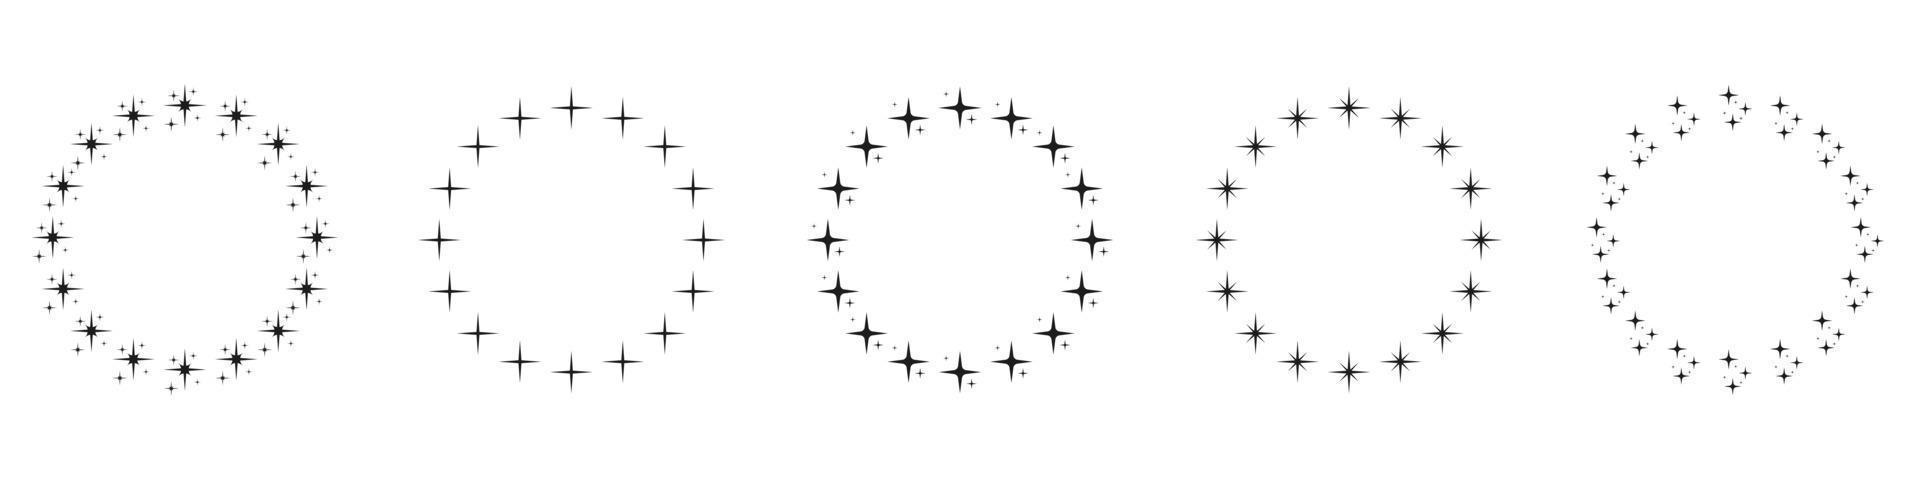 étoiles dans le jeu d'icônes de silhouette en forme de cercle. icône d'ornement décor circulaire sur fond blanc. cadre de prix rond moderne avec pictogramme d'étoiles noires. illustration vectorielle isolée. vecteur